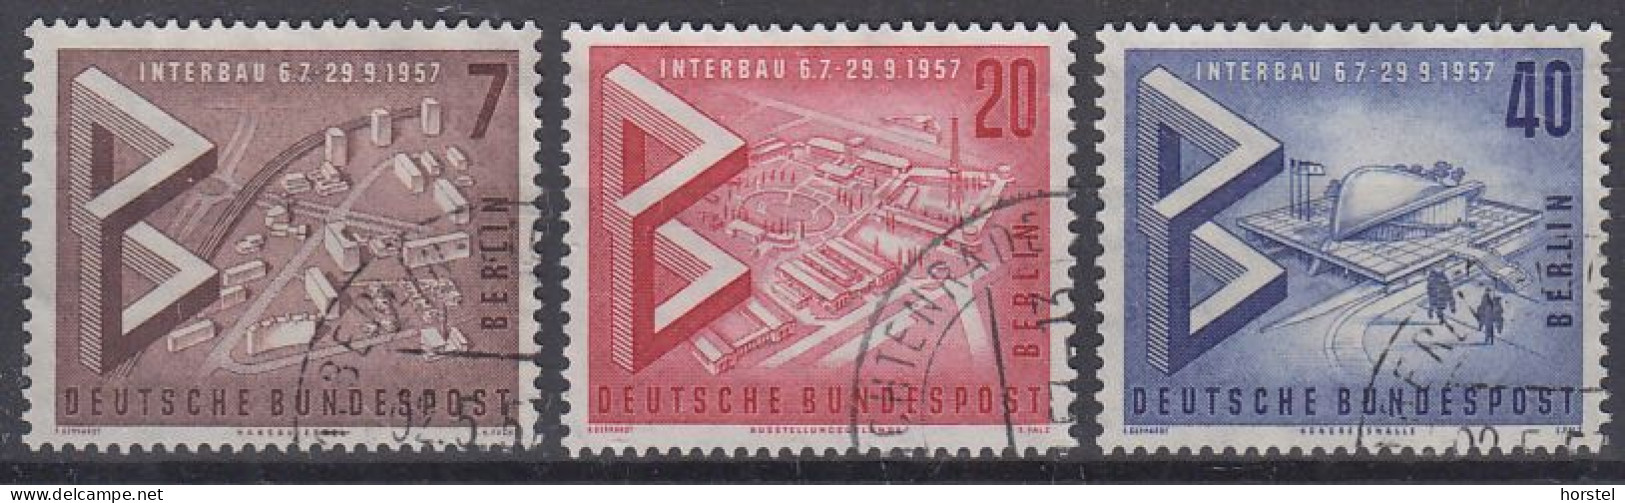 Berlin Mi Nr.160-162  Internationale Bau- Ausstellung "Interbau" Berlin - Used Stamps